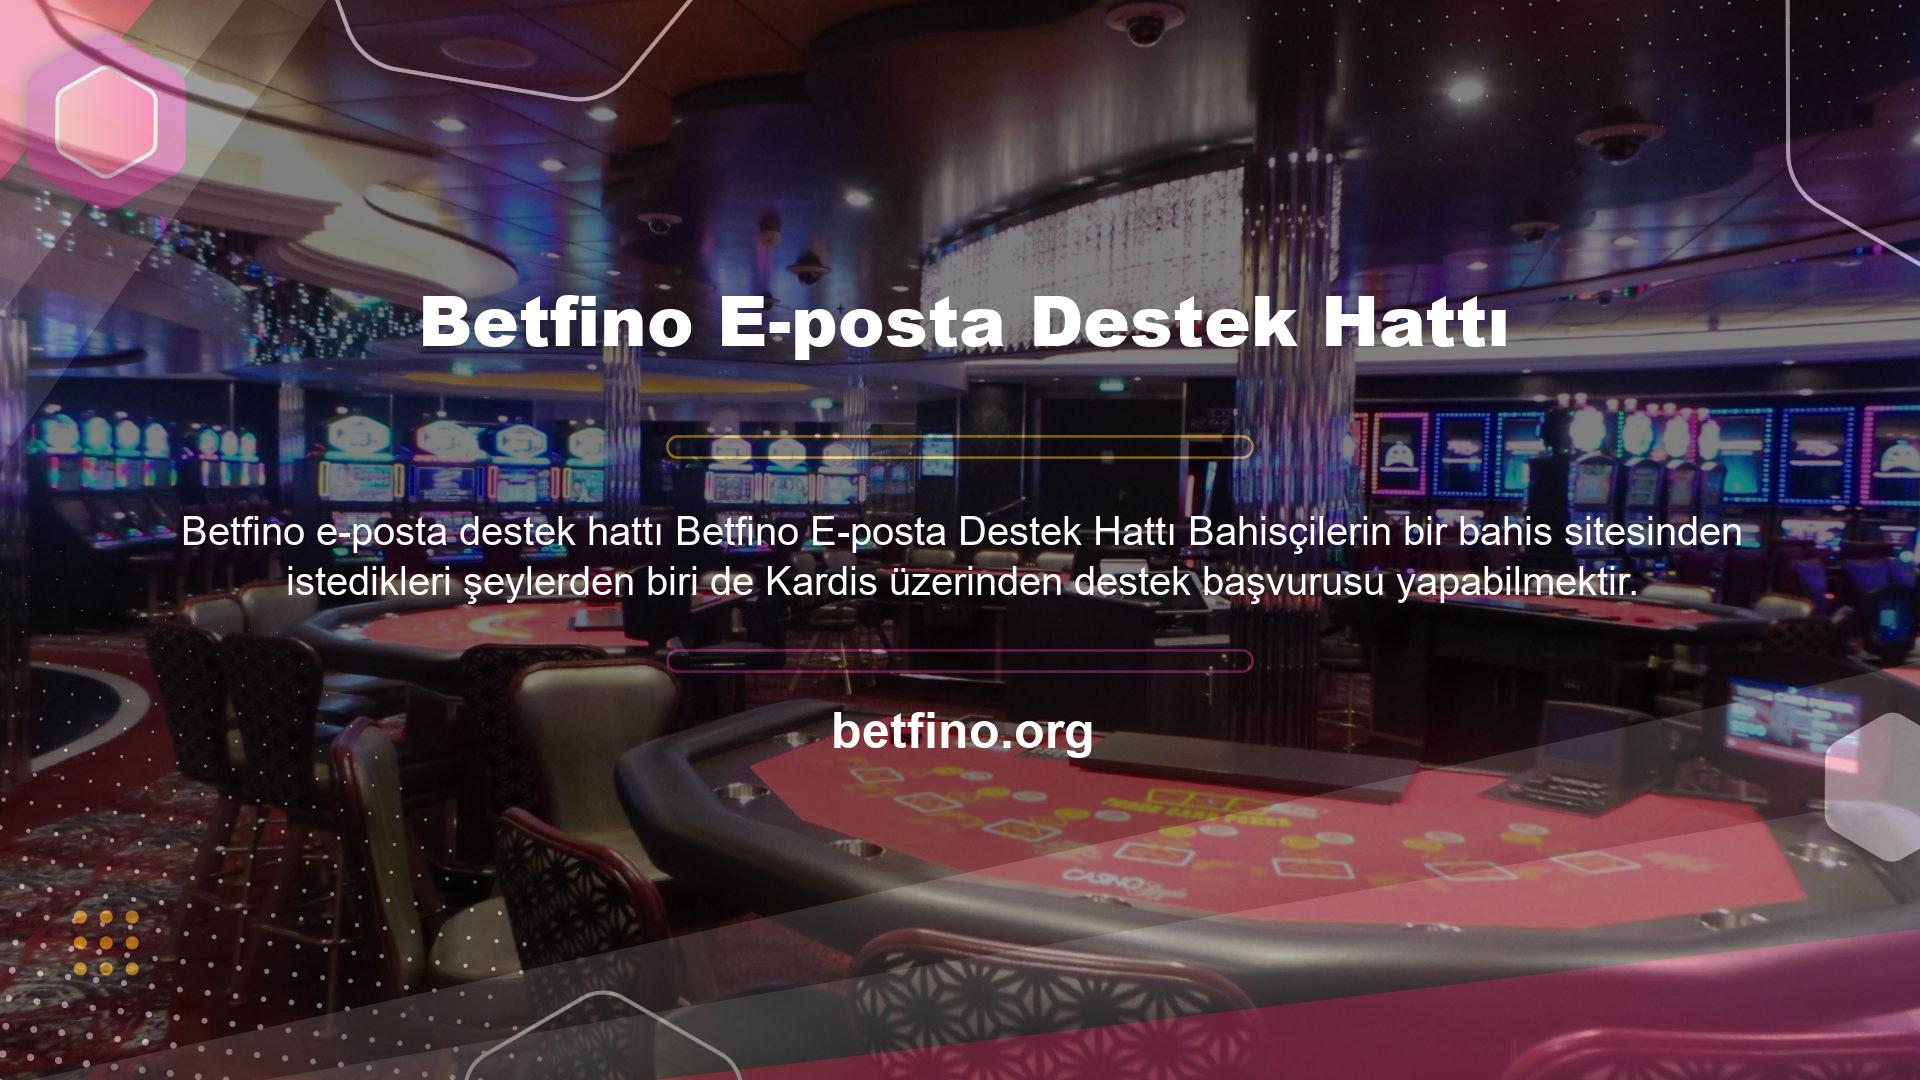 Betfino online destek hattı üzerinden dilediğiniz zaman müşteri hizmetleri ile iletişime geçilerek her türlü destek sağlanabilir